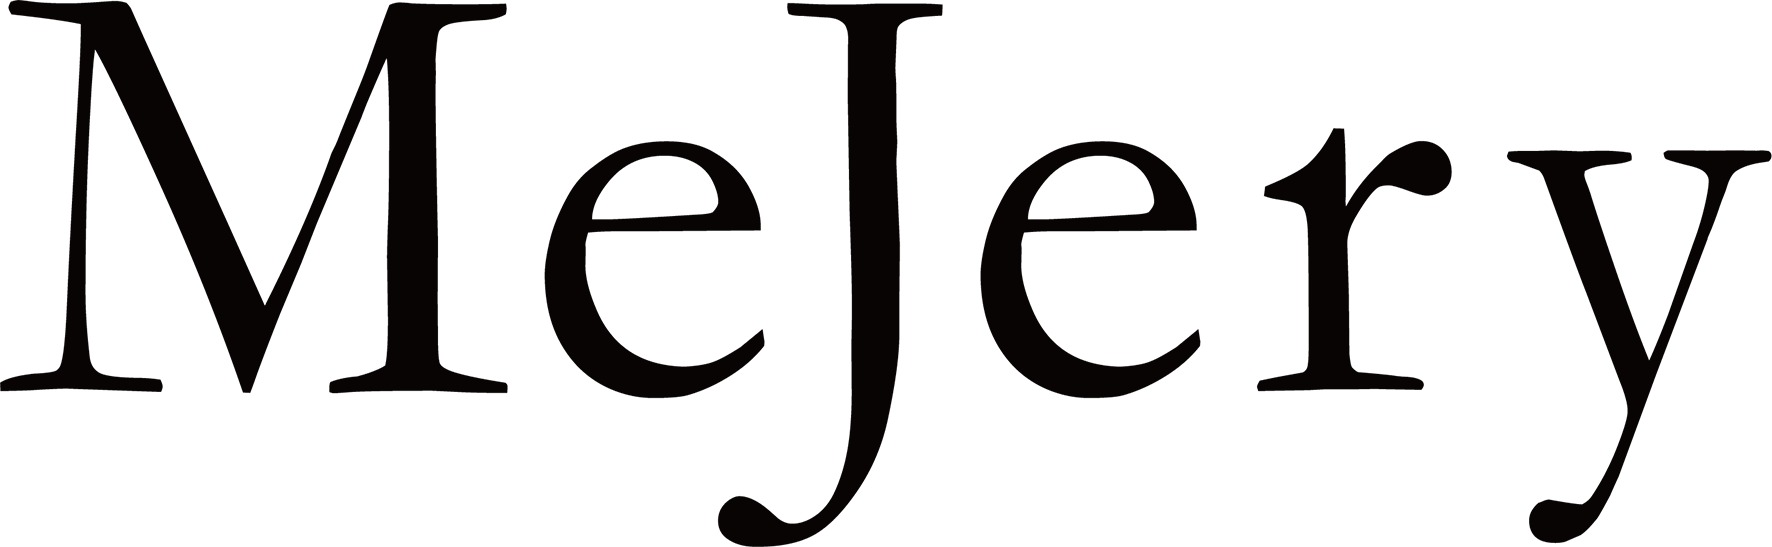 MeJery(ミジェリー)ロゴ